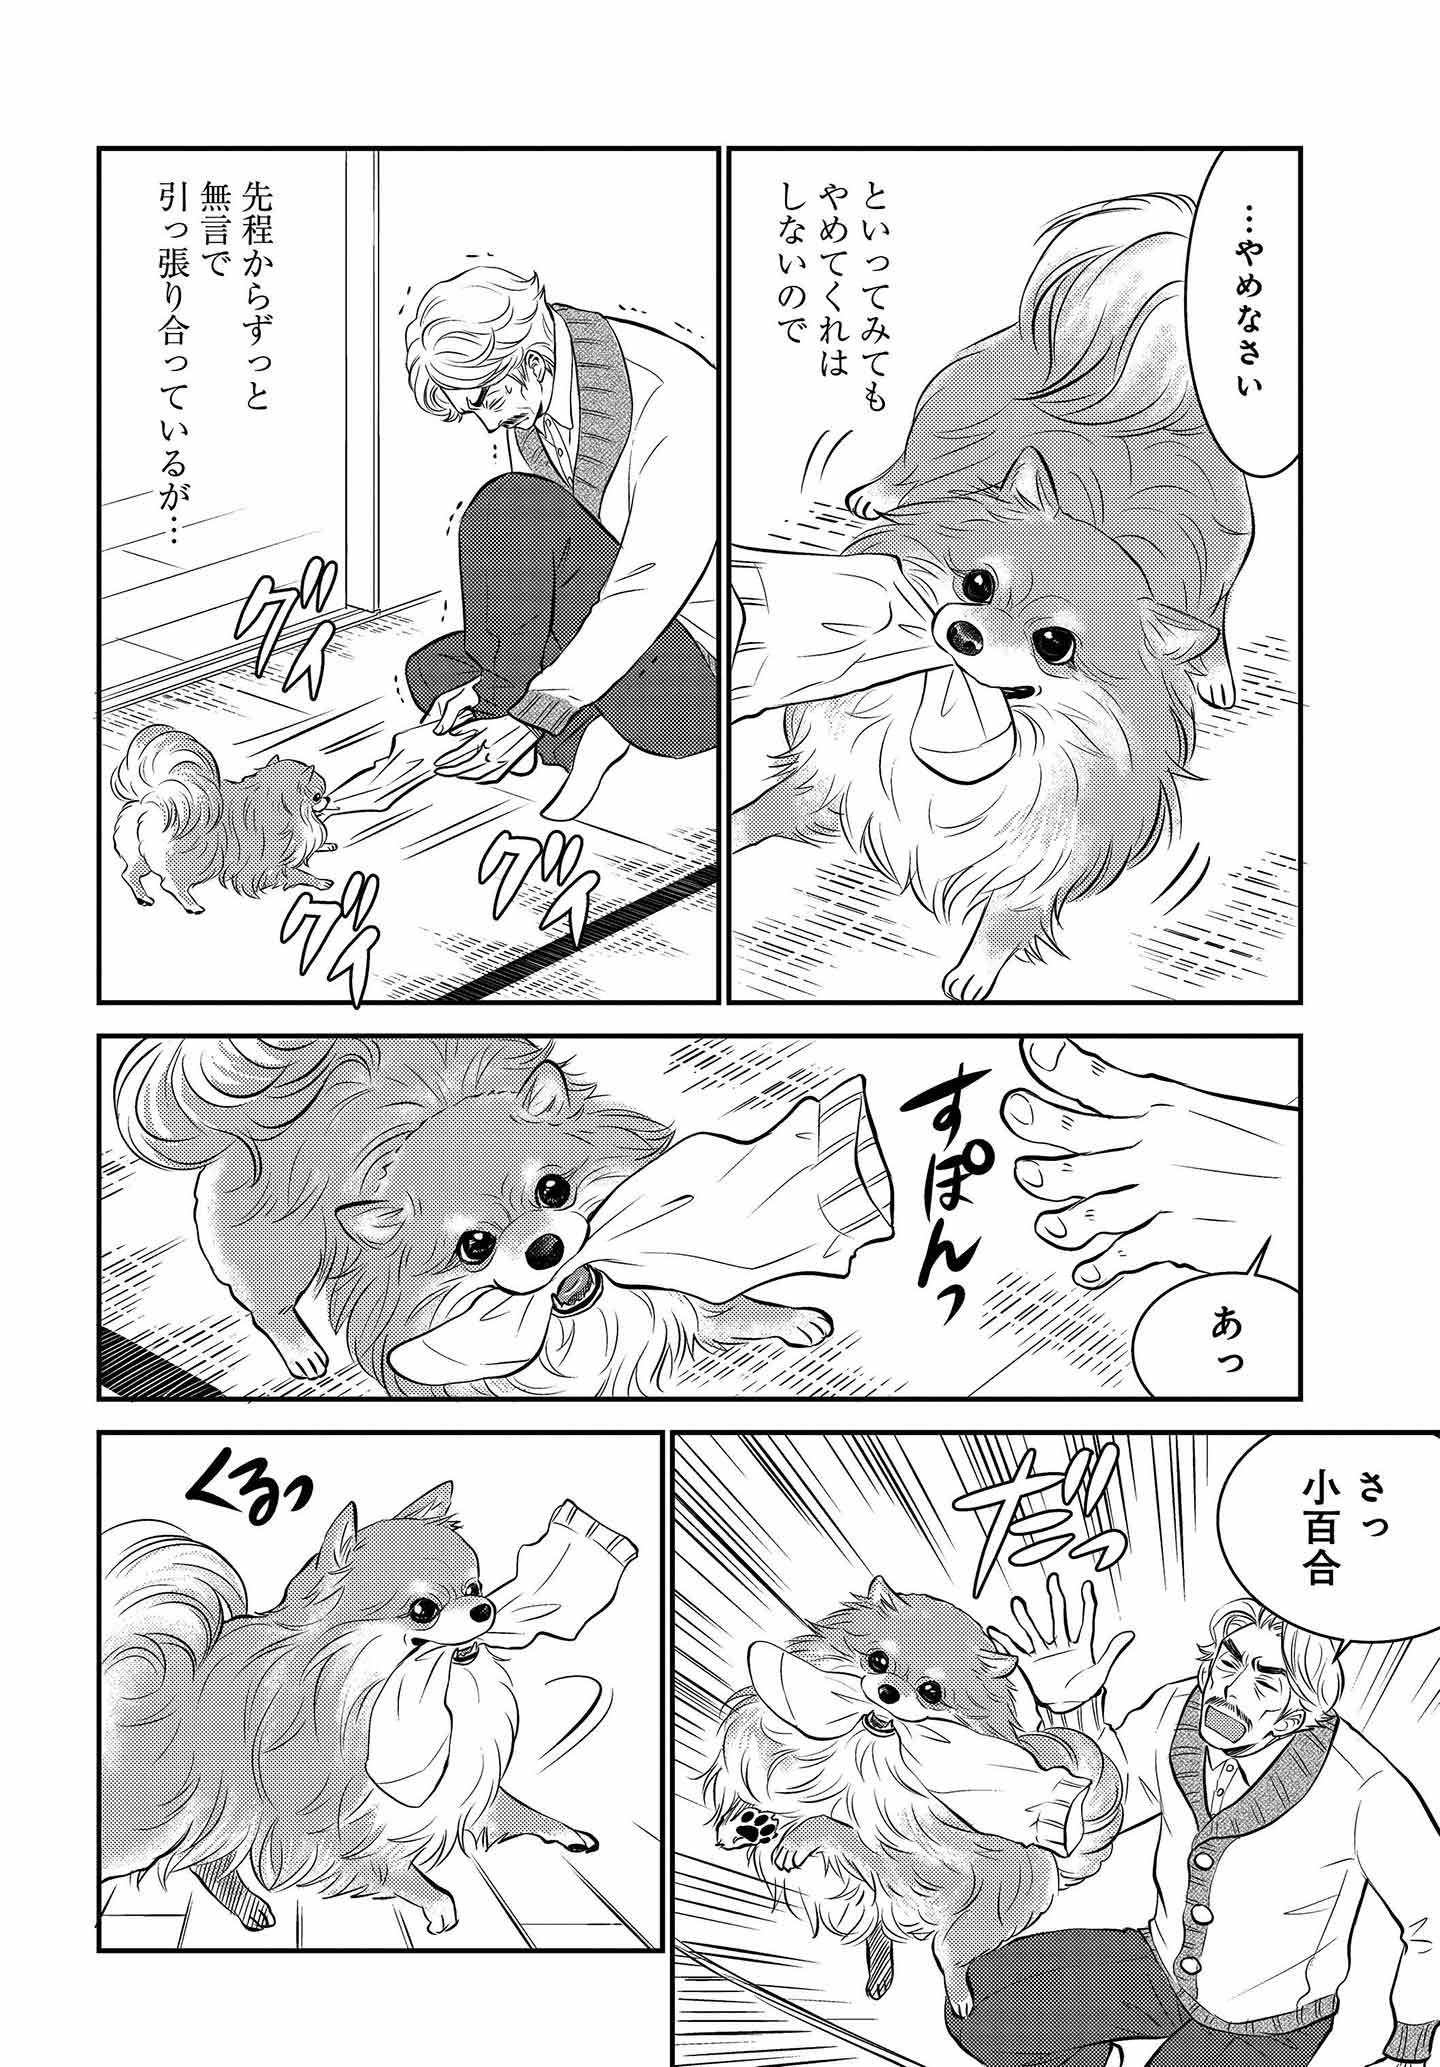 ドッグトレーニング漫画『DOG SIGNAL』32話目　2/4